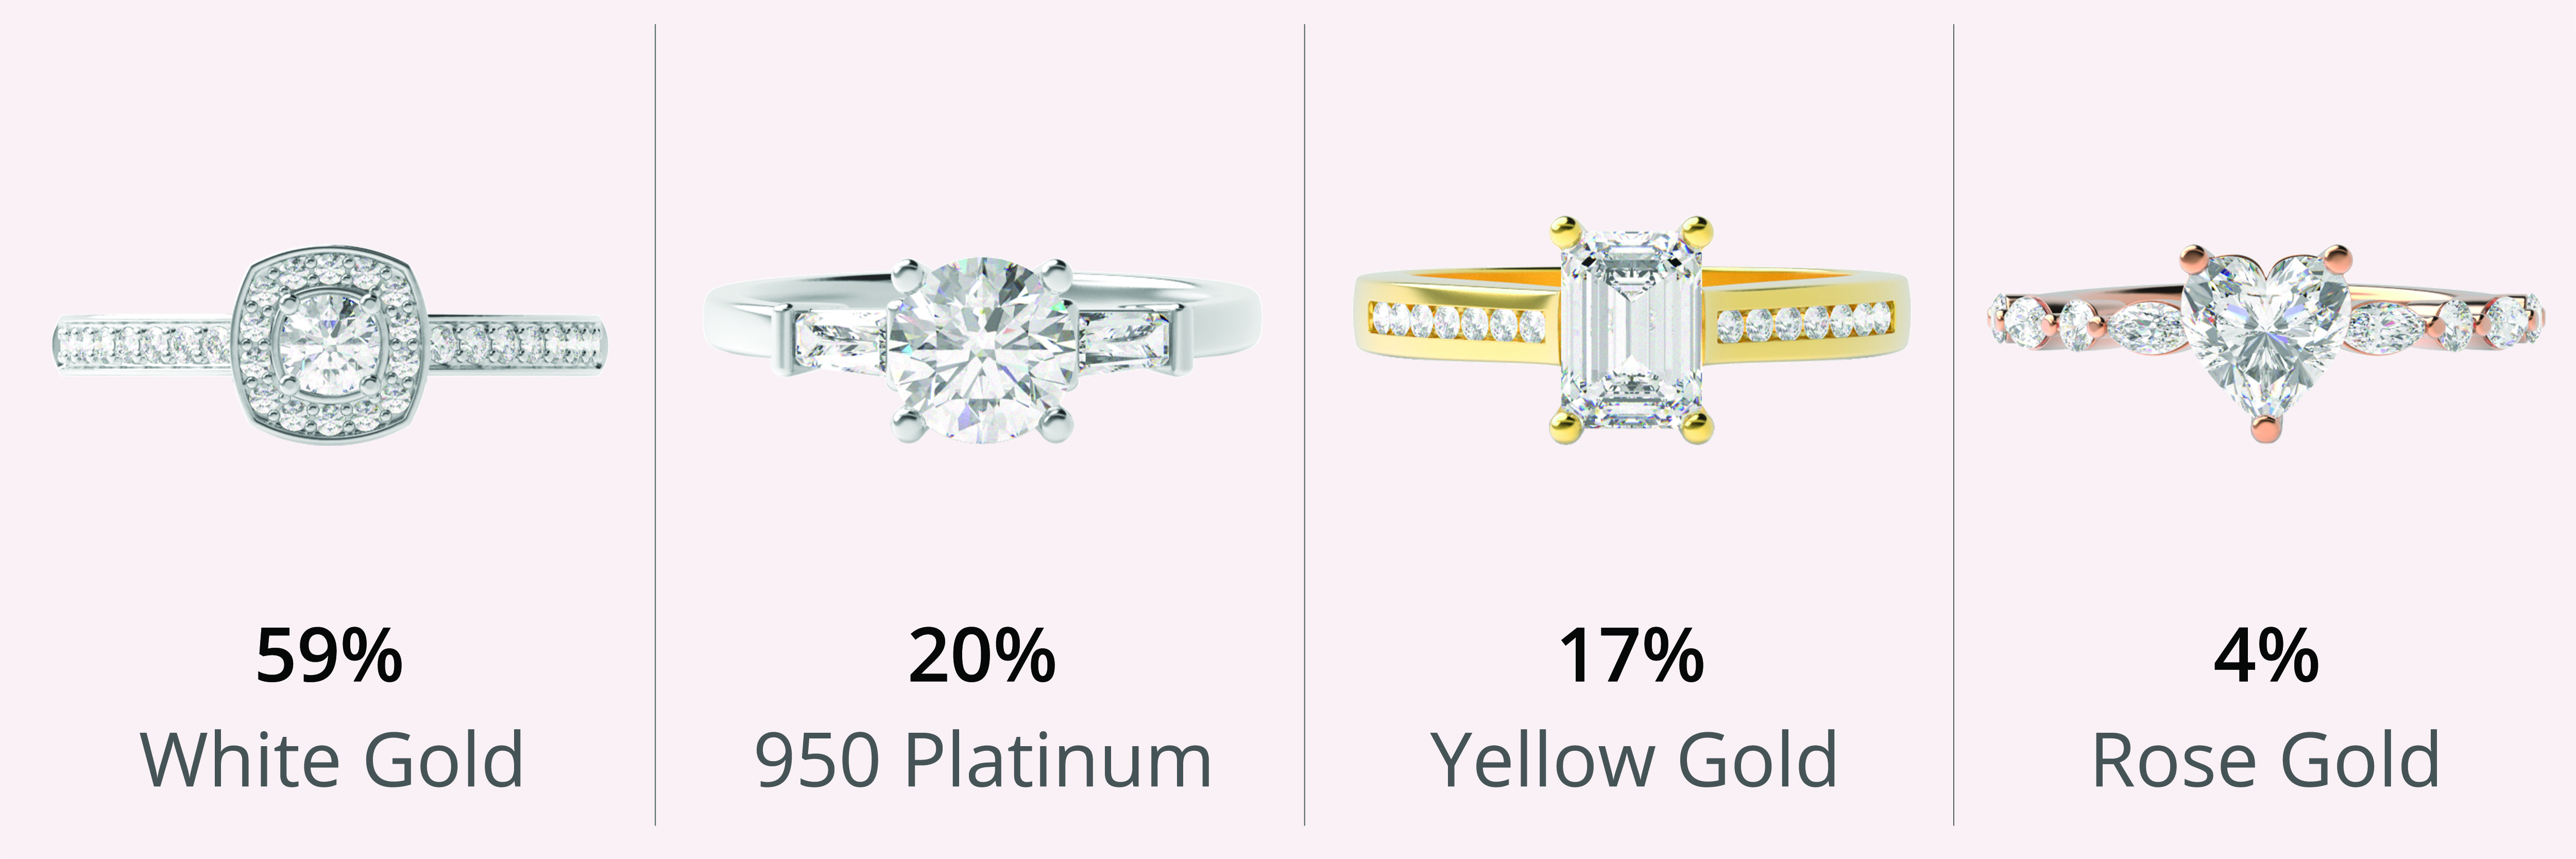 Platinum vs. Gold: A Comparison of Excellence